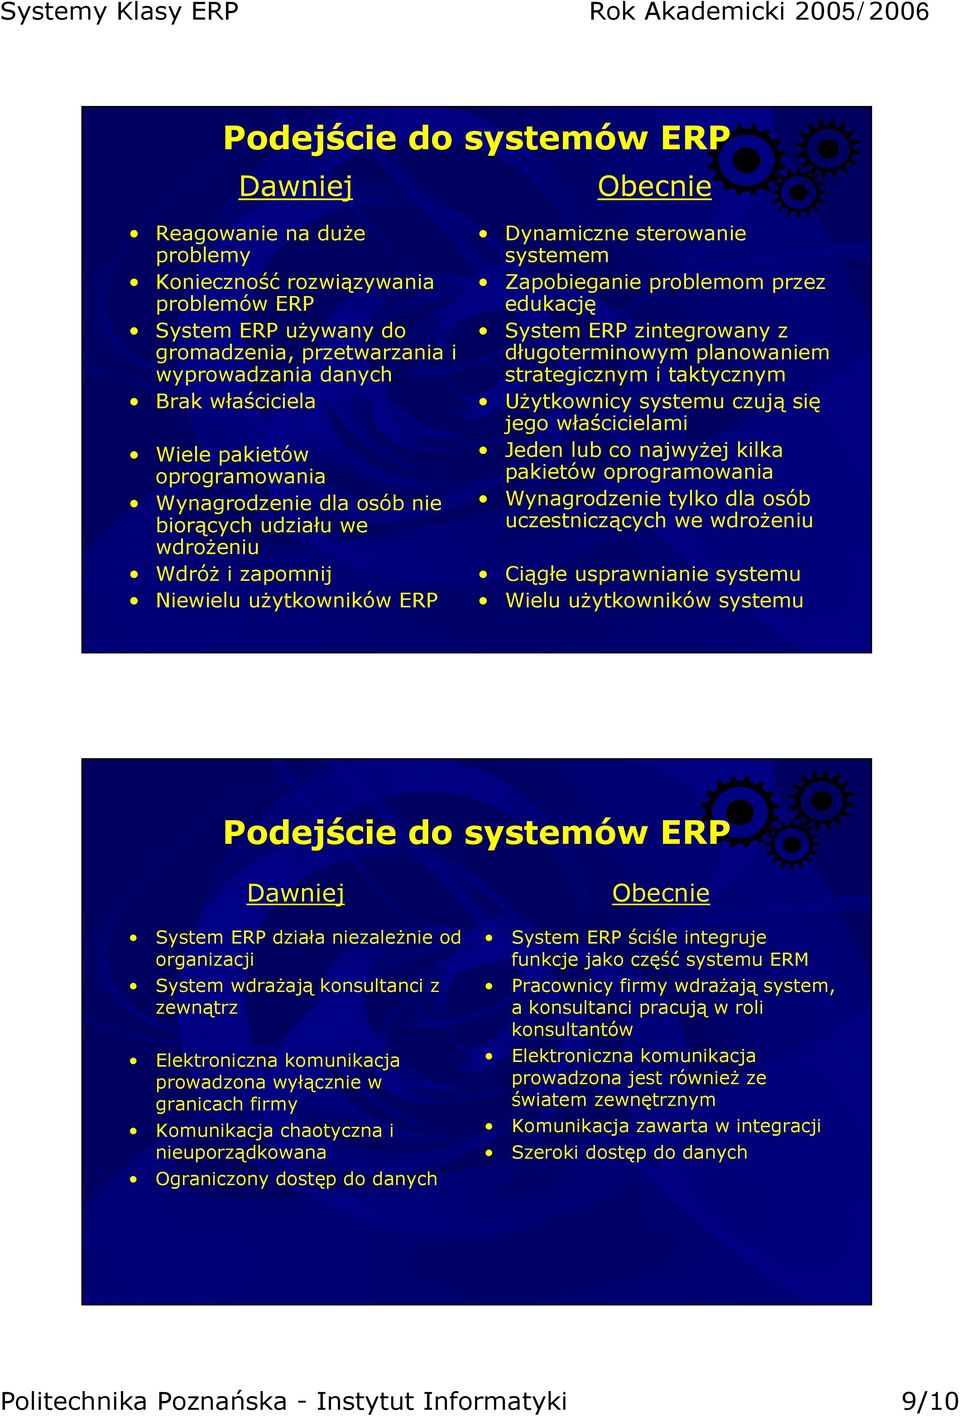 edukację System ERP zintegrowany z długoterminowym planowaniem strategicznym i taktycznym Użytkownicy systemu czują się jego właścicielami Jeden lub co najwyżej kilka pakietów oprogramowania